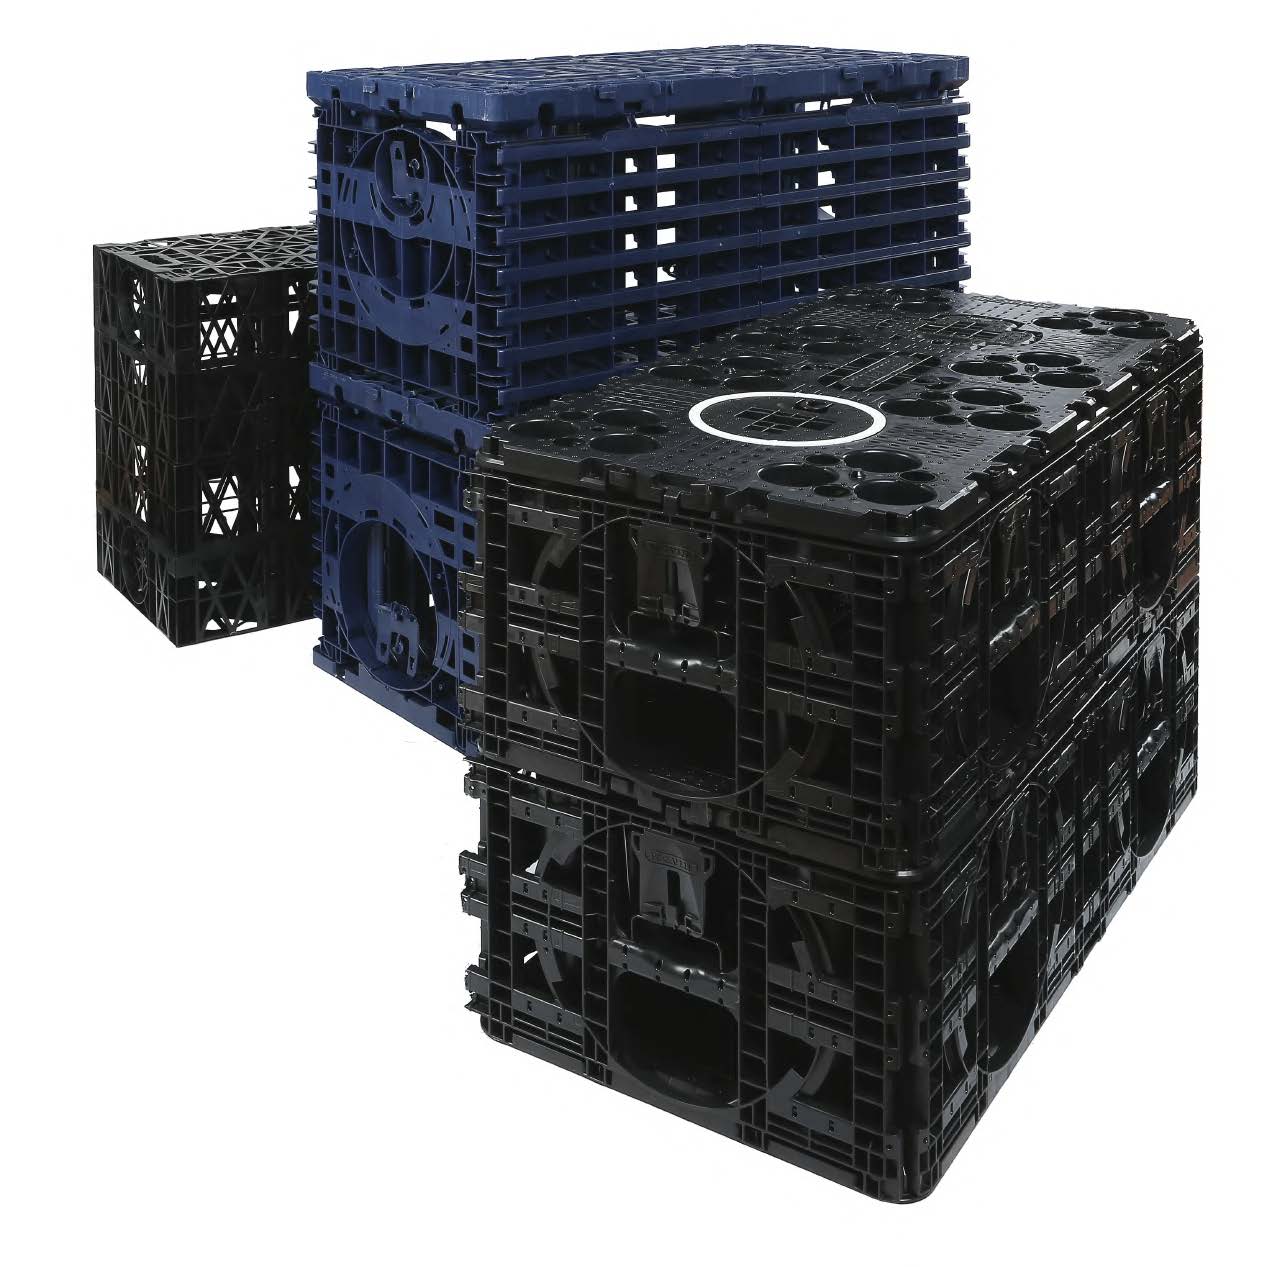 AquaCell NextGen crates